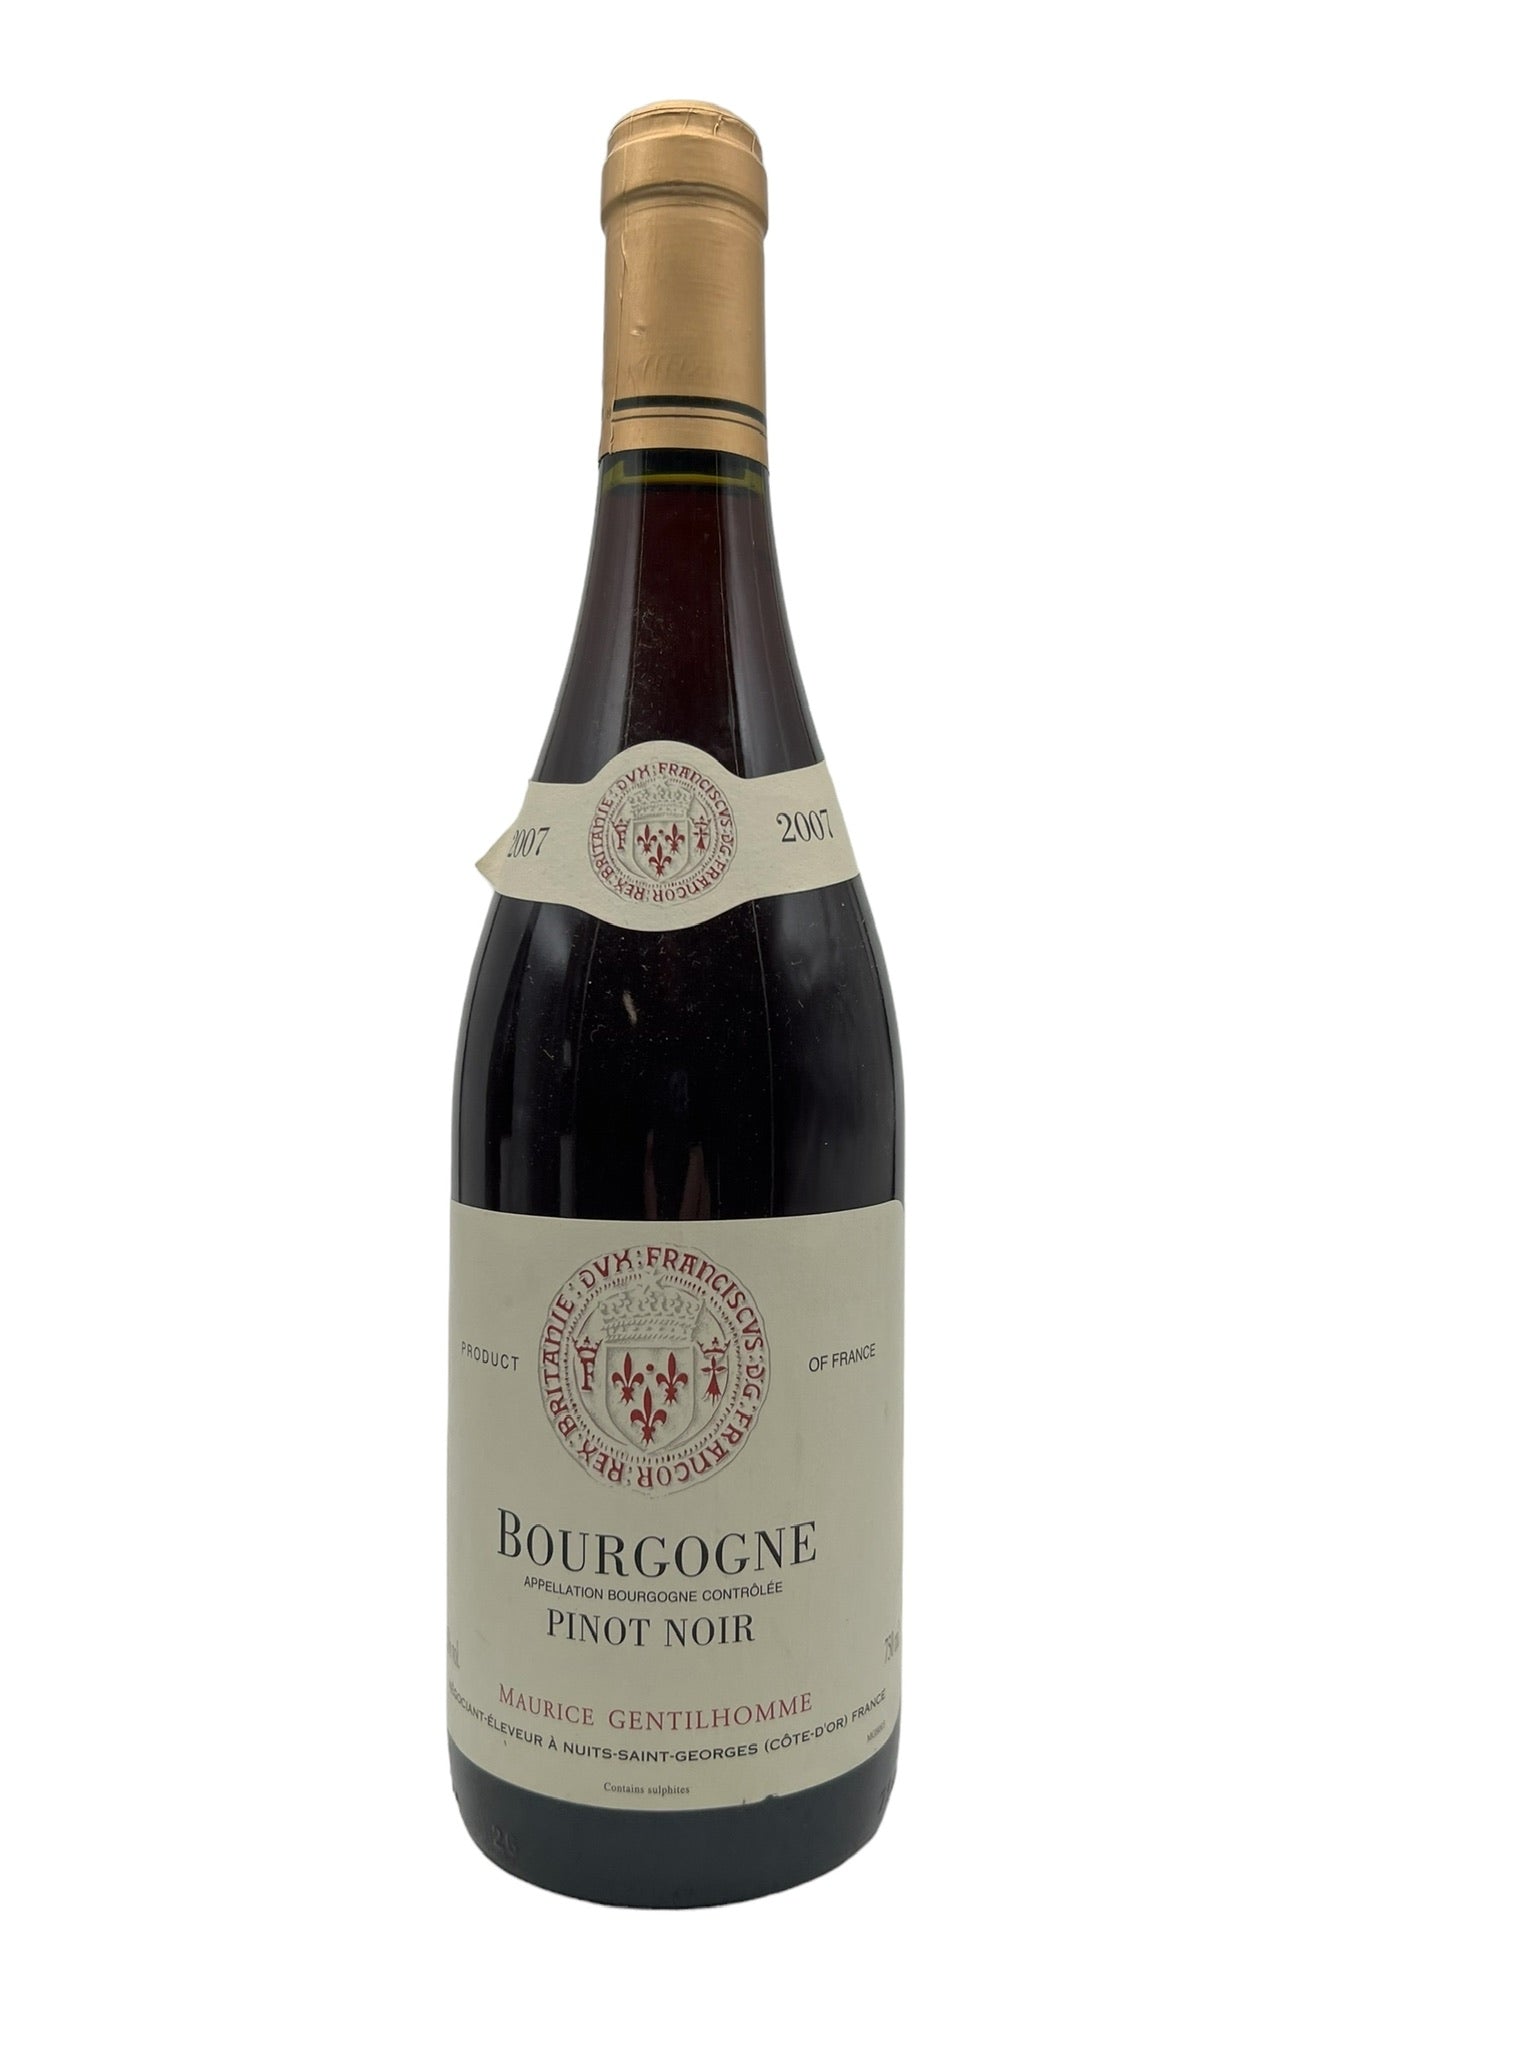 Billede af Bourgogne Pinot Noir 2007 Gentilhomme